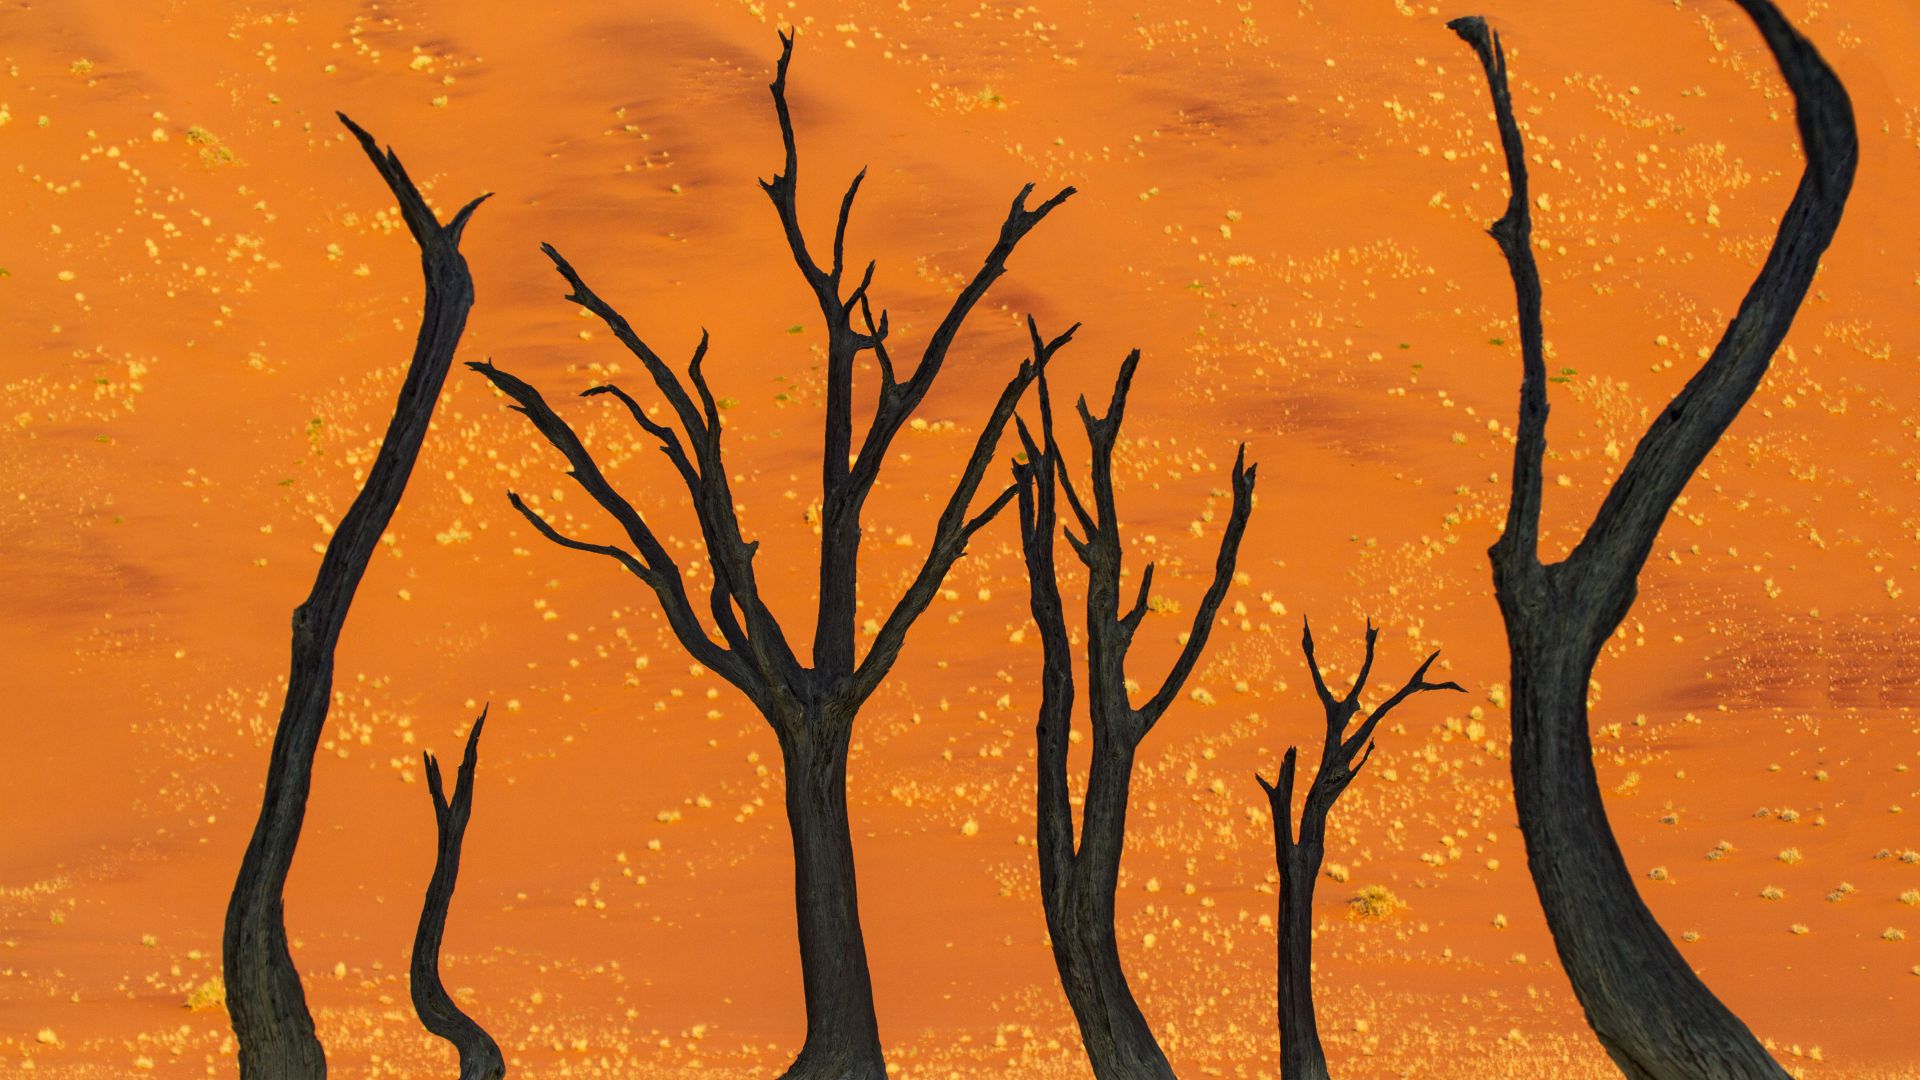 Намибия, 5k, 4k, 8k, дерево верблюжьи колючки, пустыня, namibia, 5k, 4k wallpaper, 8k, camel thorn tree, desert (horizontal)